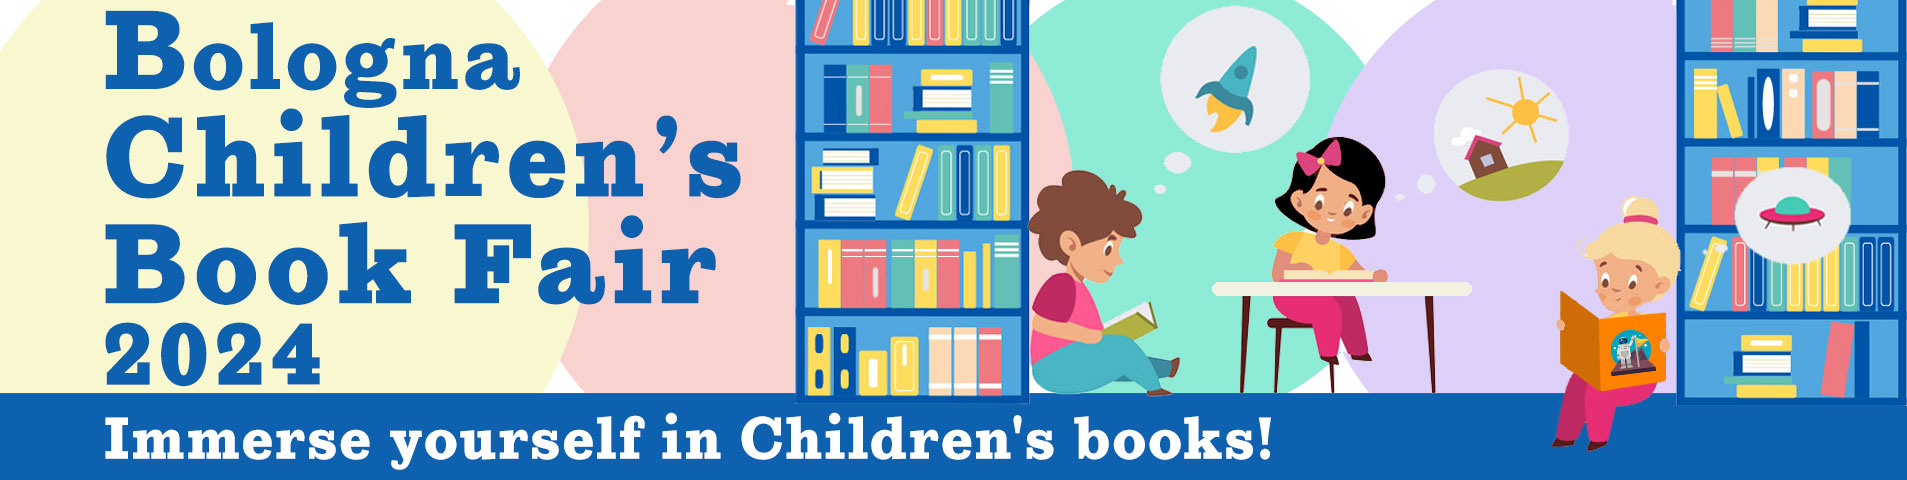 Bologna Children’s Book fair 2024 -Immerse yourself in Children's books!-